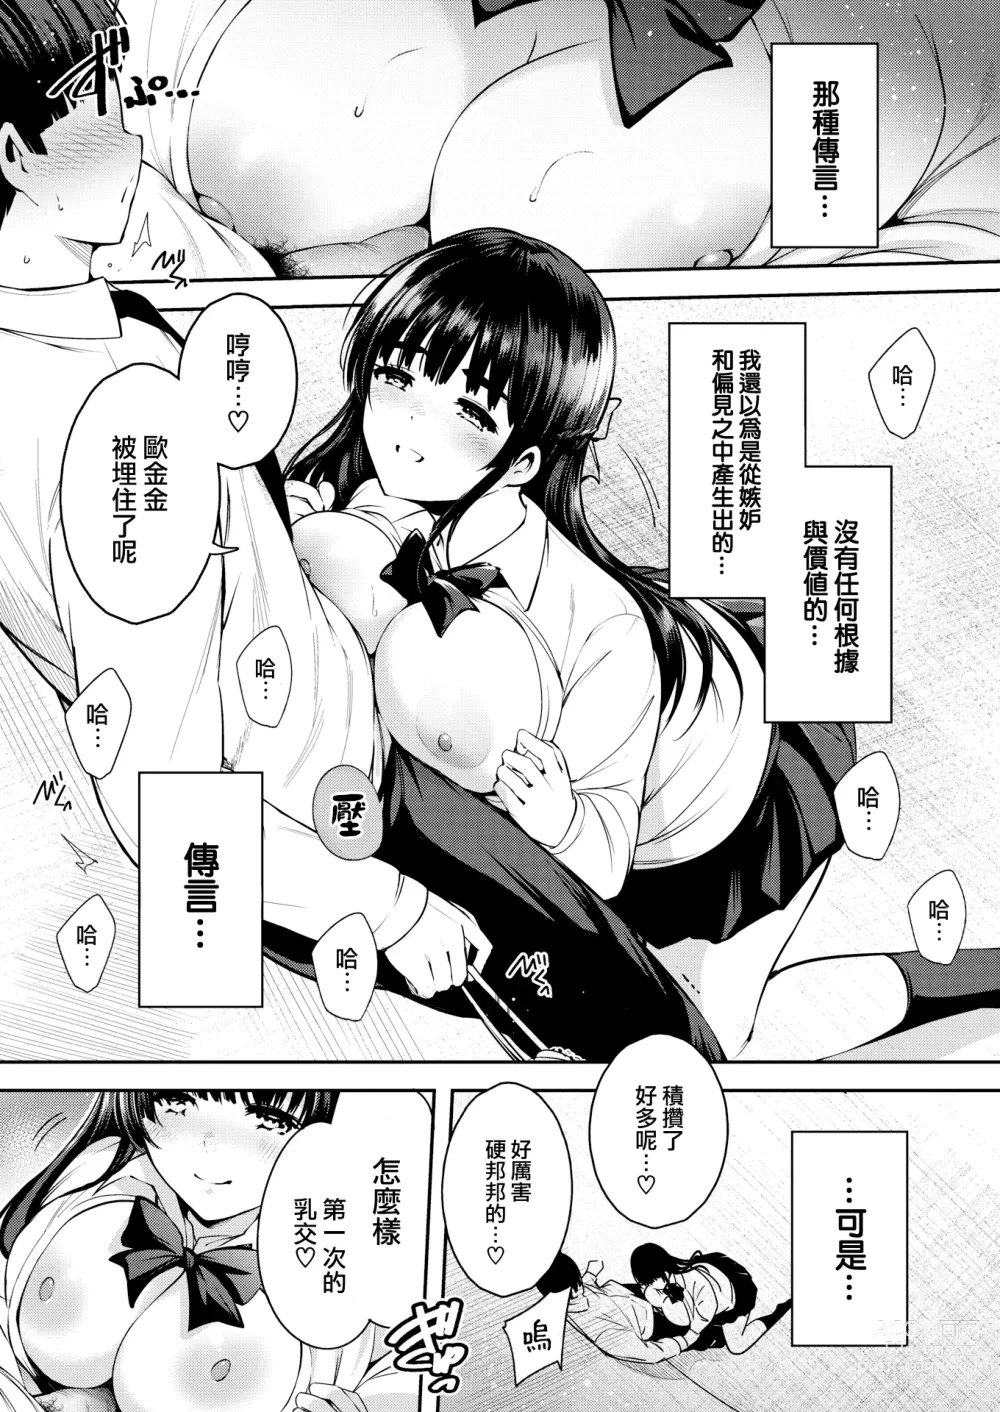 Page 8 of manga Aoi Sora no Mashita de